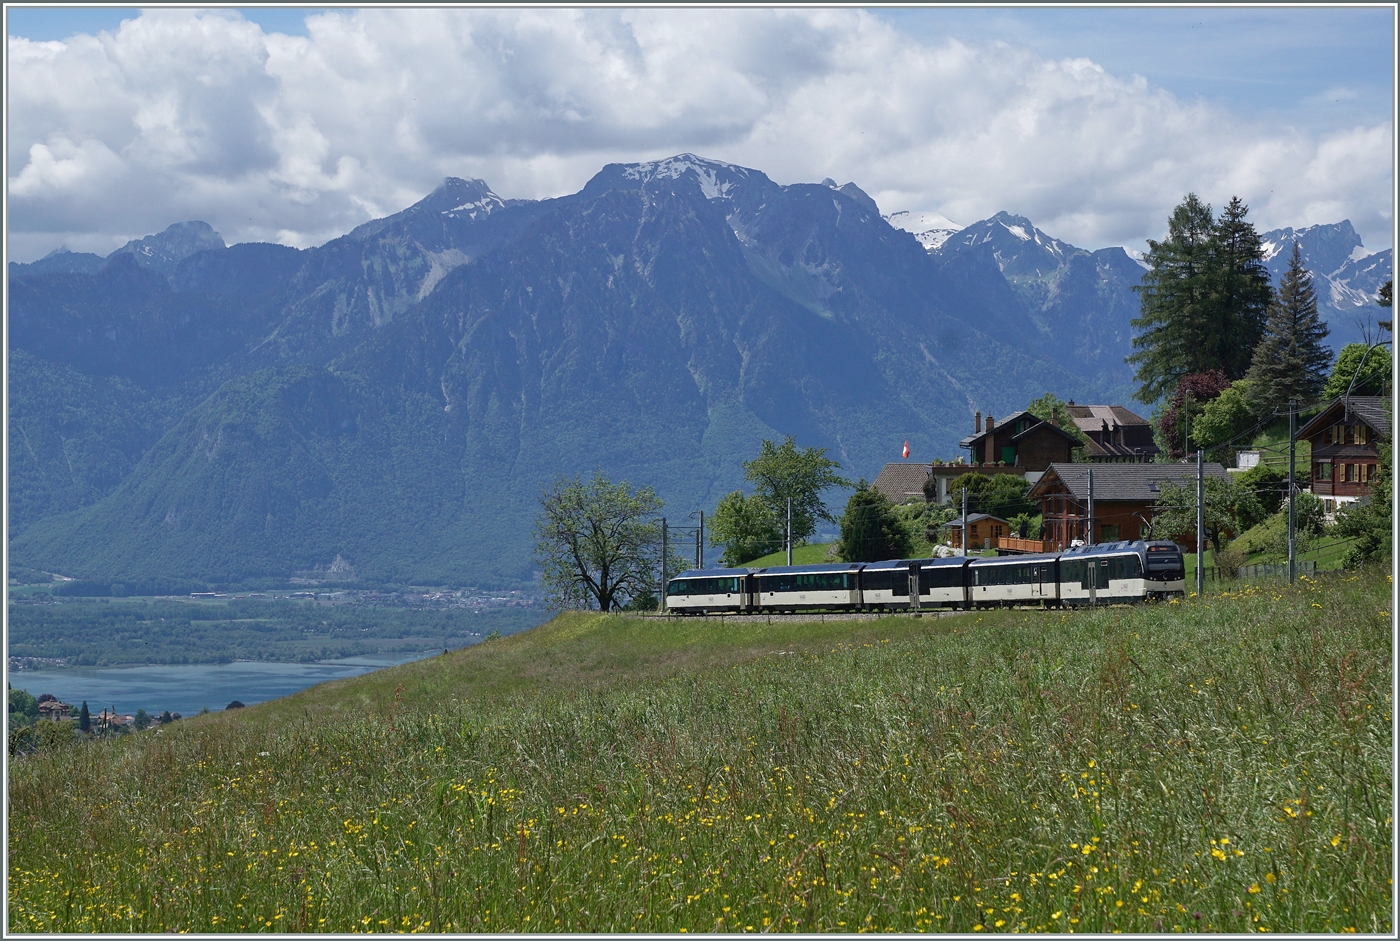 Bei Les Avant schiebt ein MOB Be 4/4  Alpina  ihren Regionalzug Zweisimmen - Montreux in Richtung Genfersee, welcher im linken Bildteil zu erkennen ist.

28. Mai 2024
